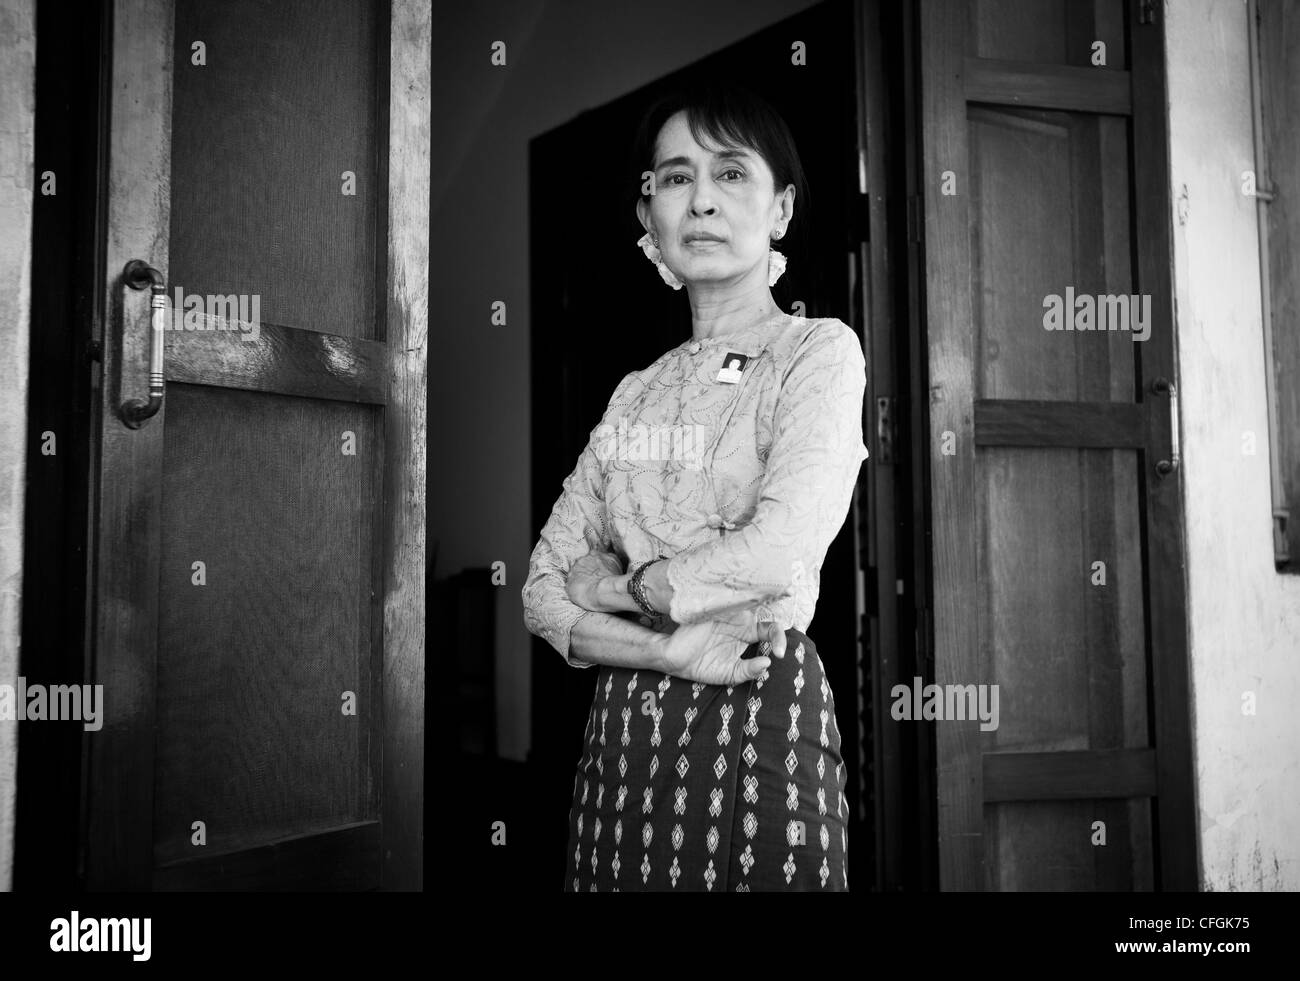 Aung San Suu Kyi, chancelier de l'État Le gouvernement du Myanmar et le chef de la Ligue nationale pour la démocratie (LND) à son domicile à Yangon au Myanmar, Birmanie Banque D'Images